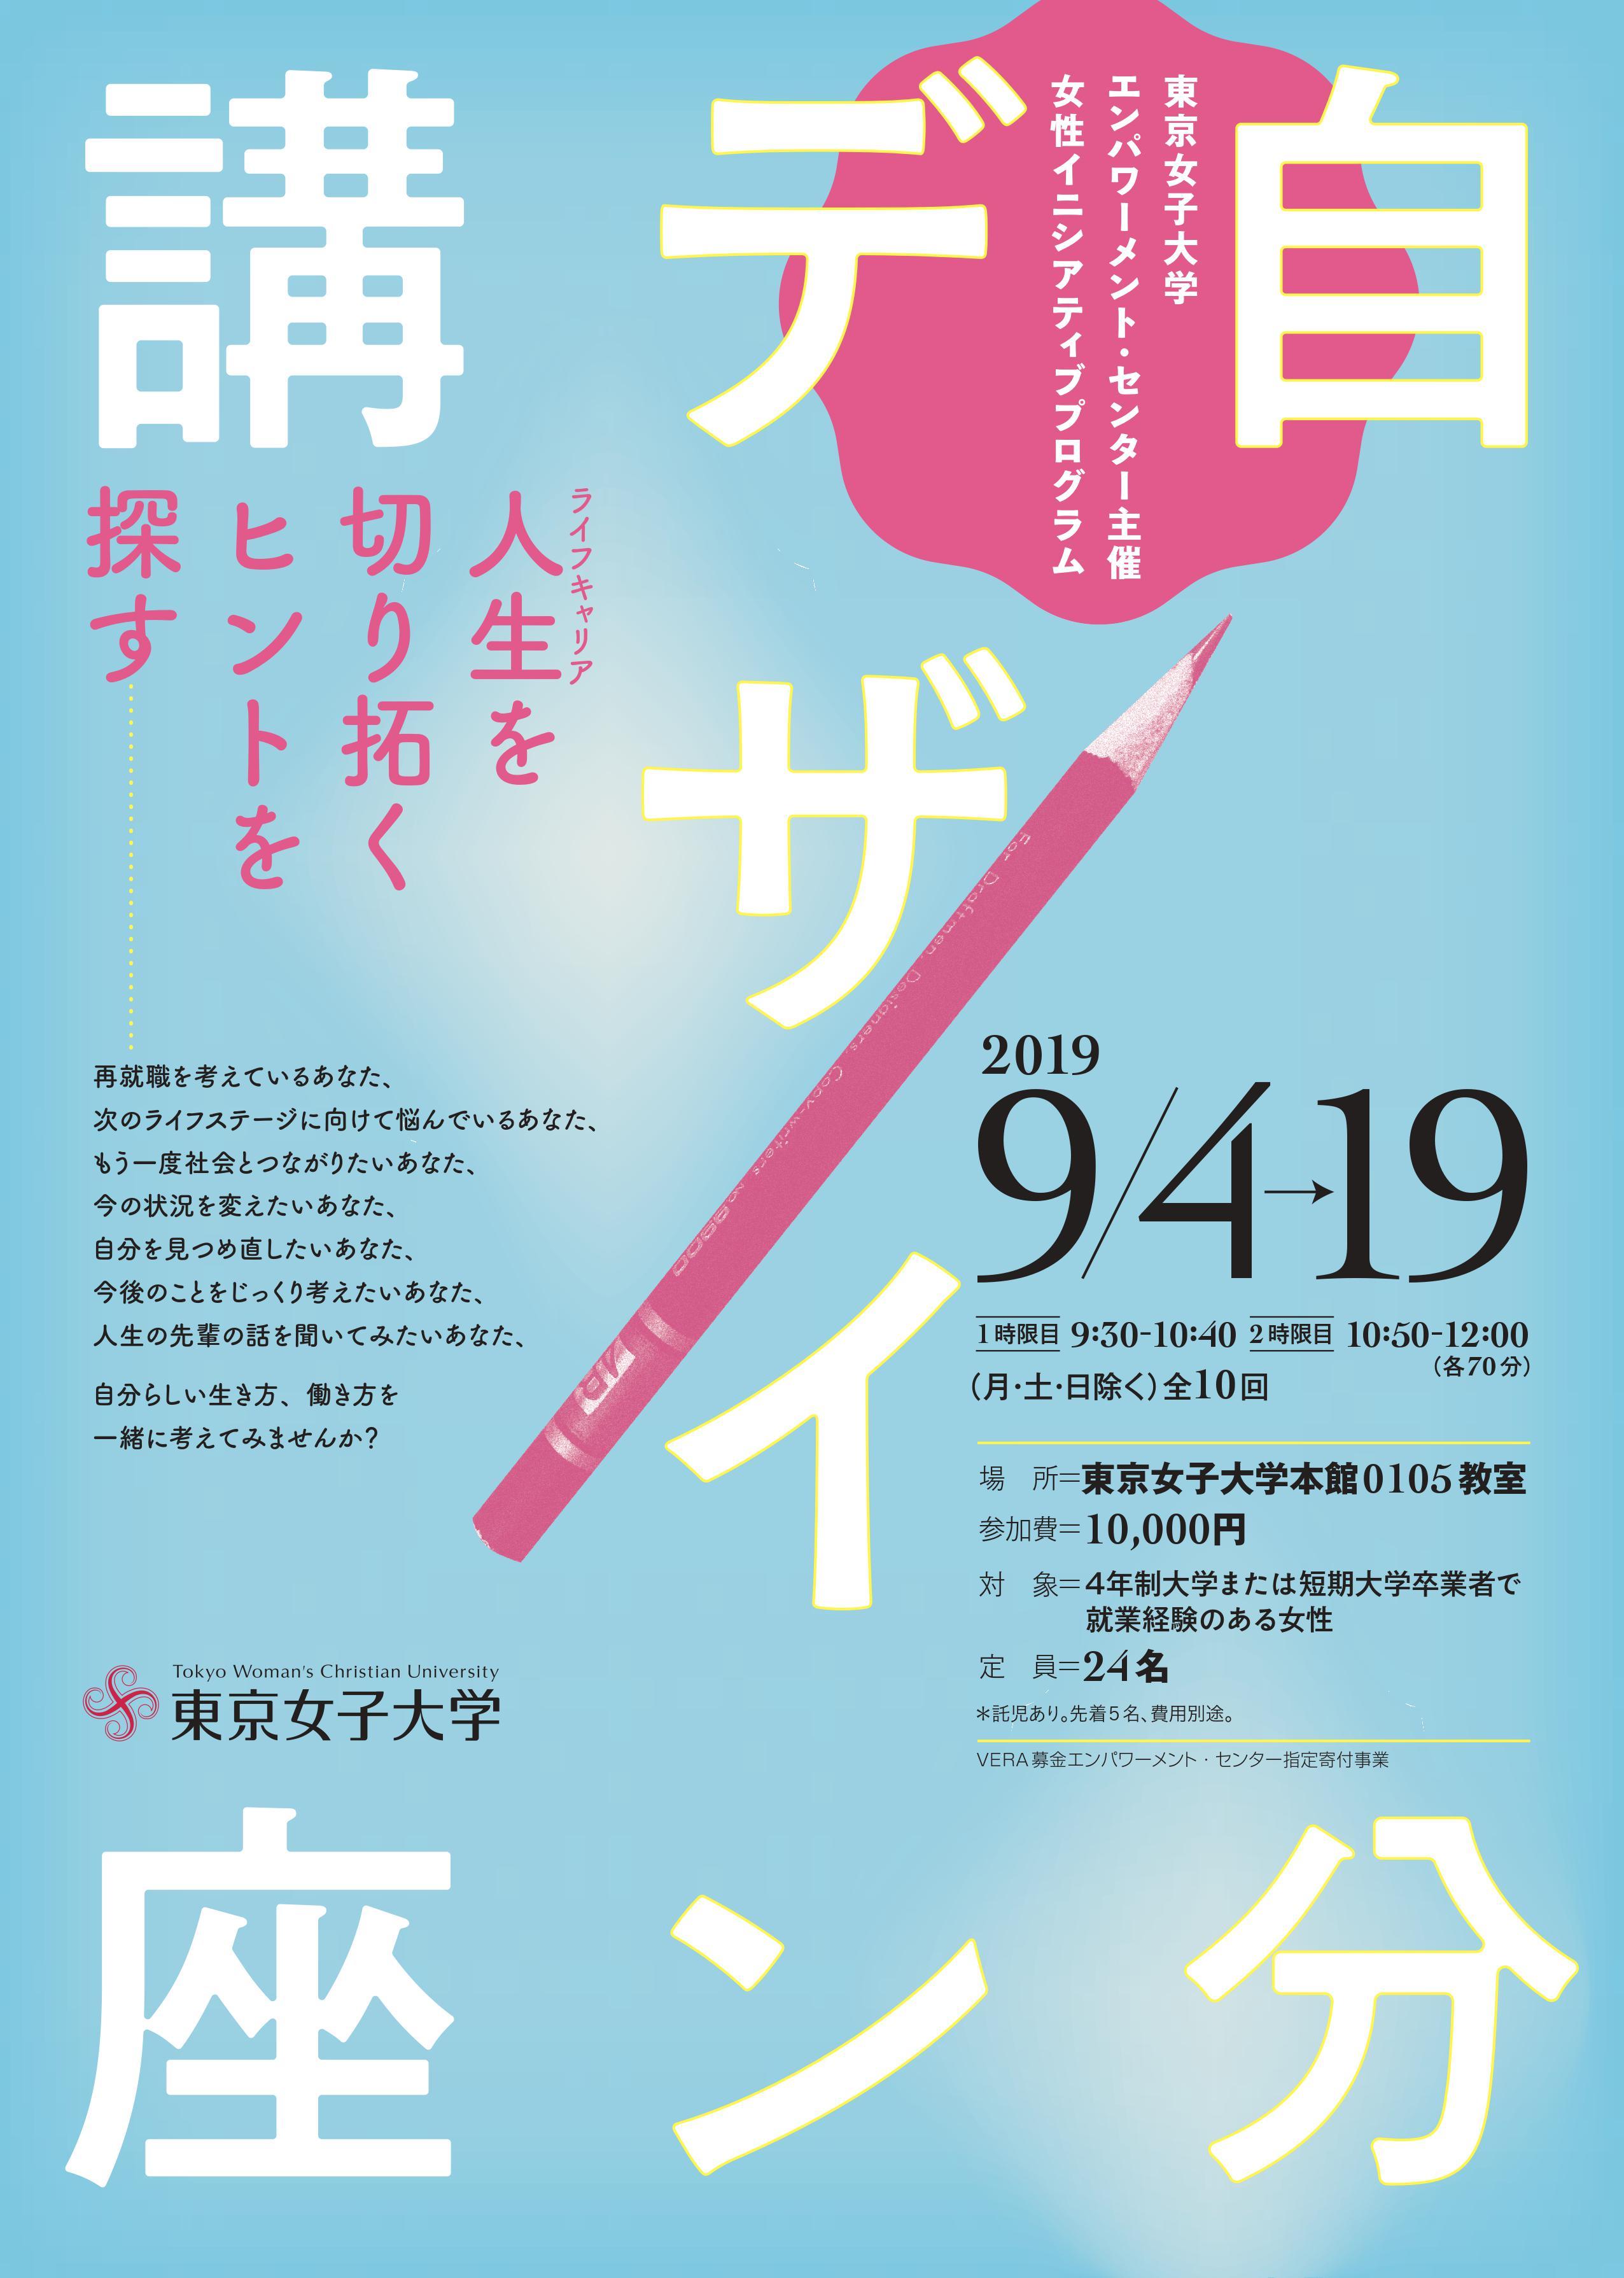 東京女子大学が女性イニシアティブプログラム「自分デザイン講座 -- 人生を切り拓くヒントを探す」（全10回）を9月に開催